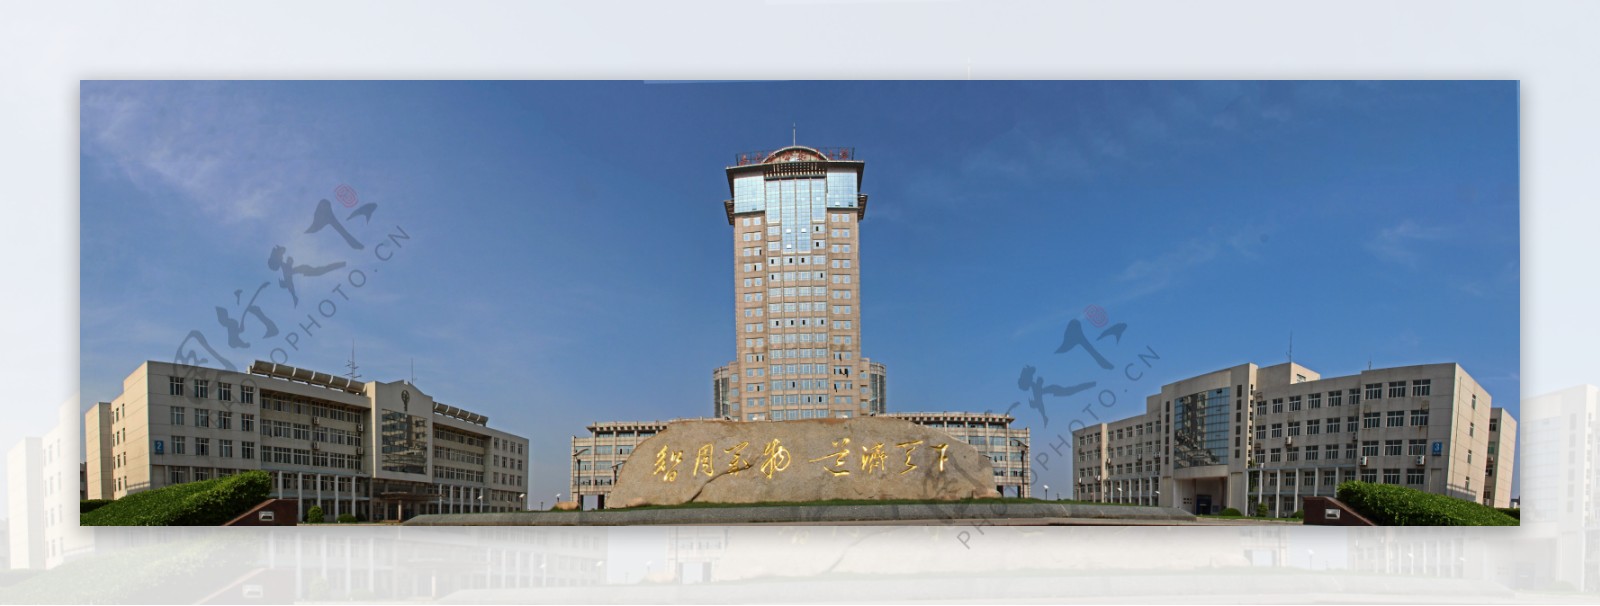 南京航空航天大学主楼全景图片